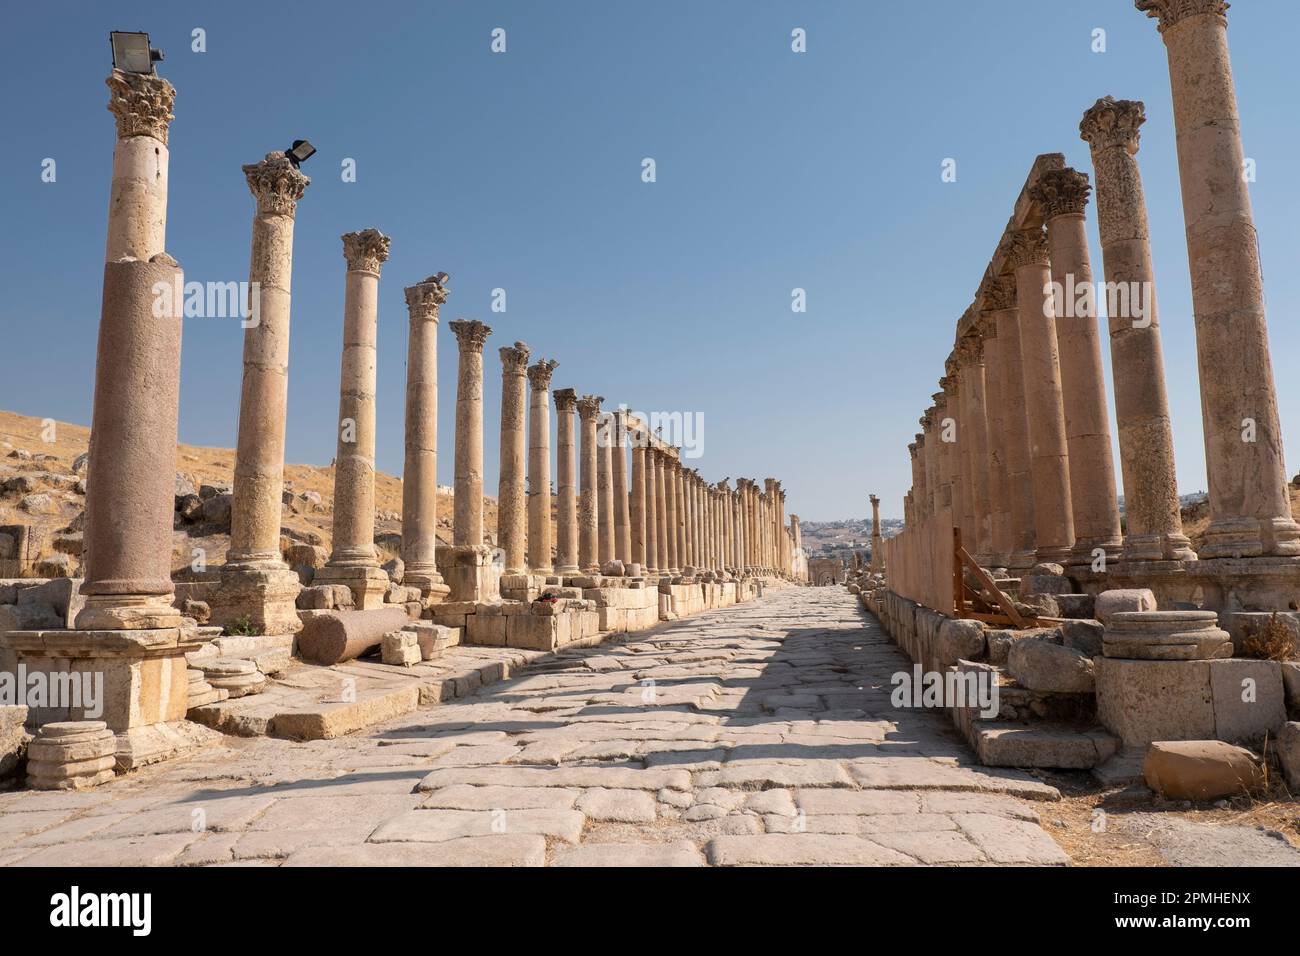 Ancienne route romaine avec colonnade, Jerash, Jordanie, Moyen-Orient Banque D'Images